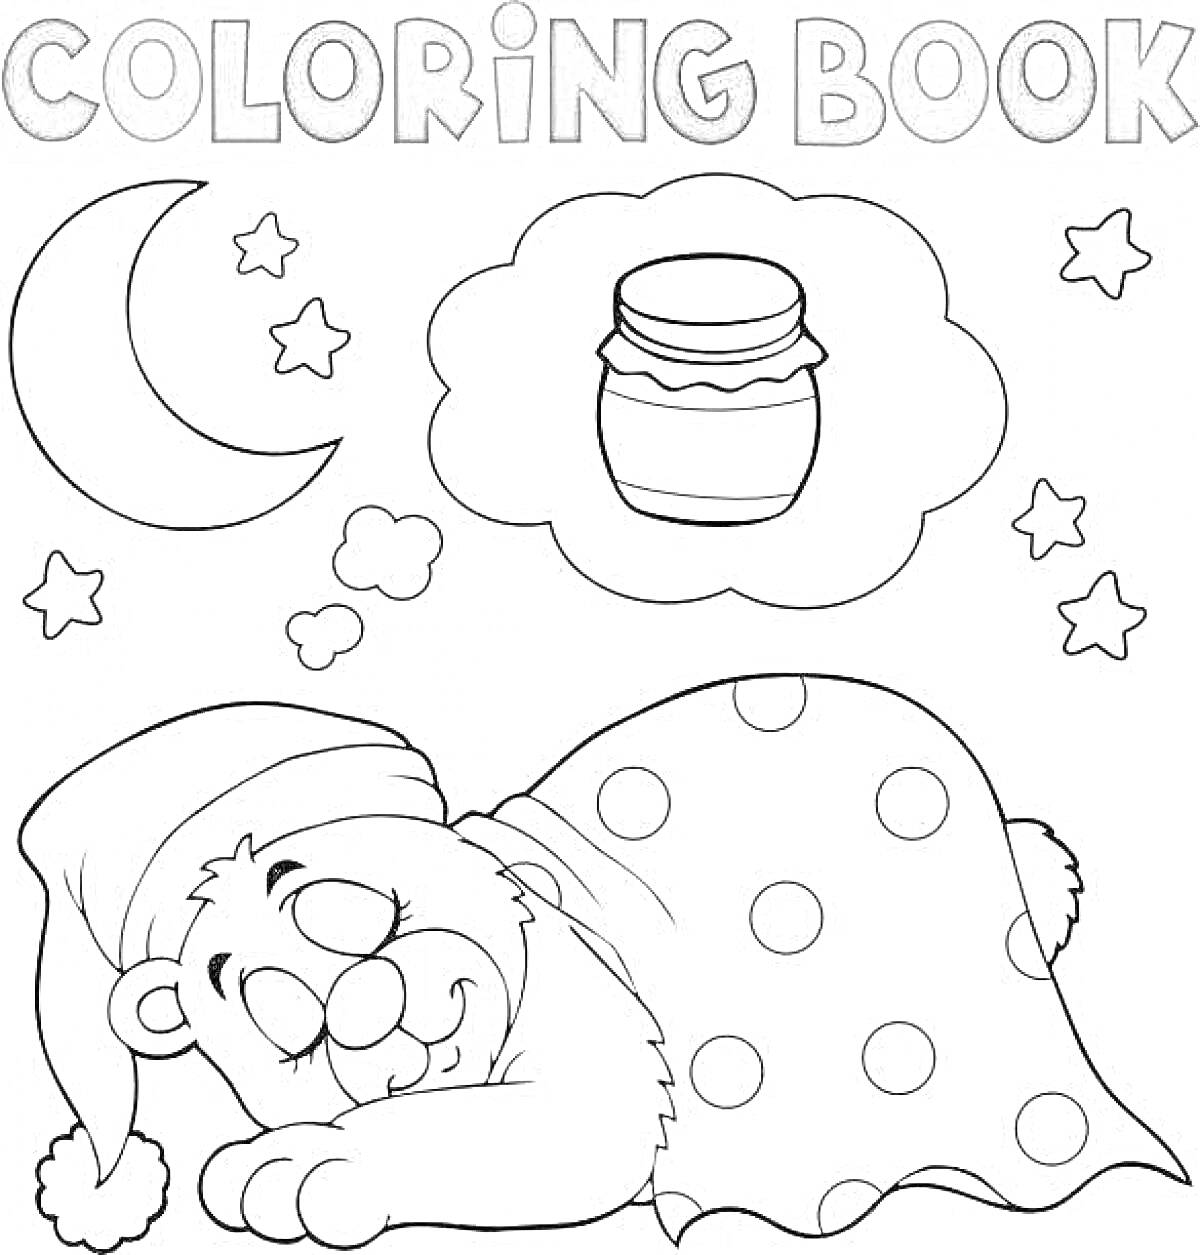 Мишка в берлоге, спящий под одеялом, на фоне месяц и звезды, сон с банкой варенья